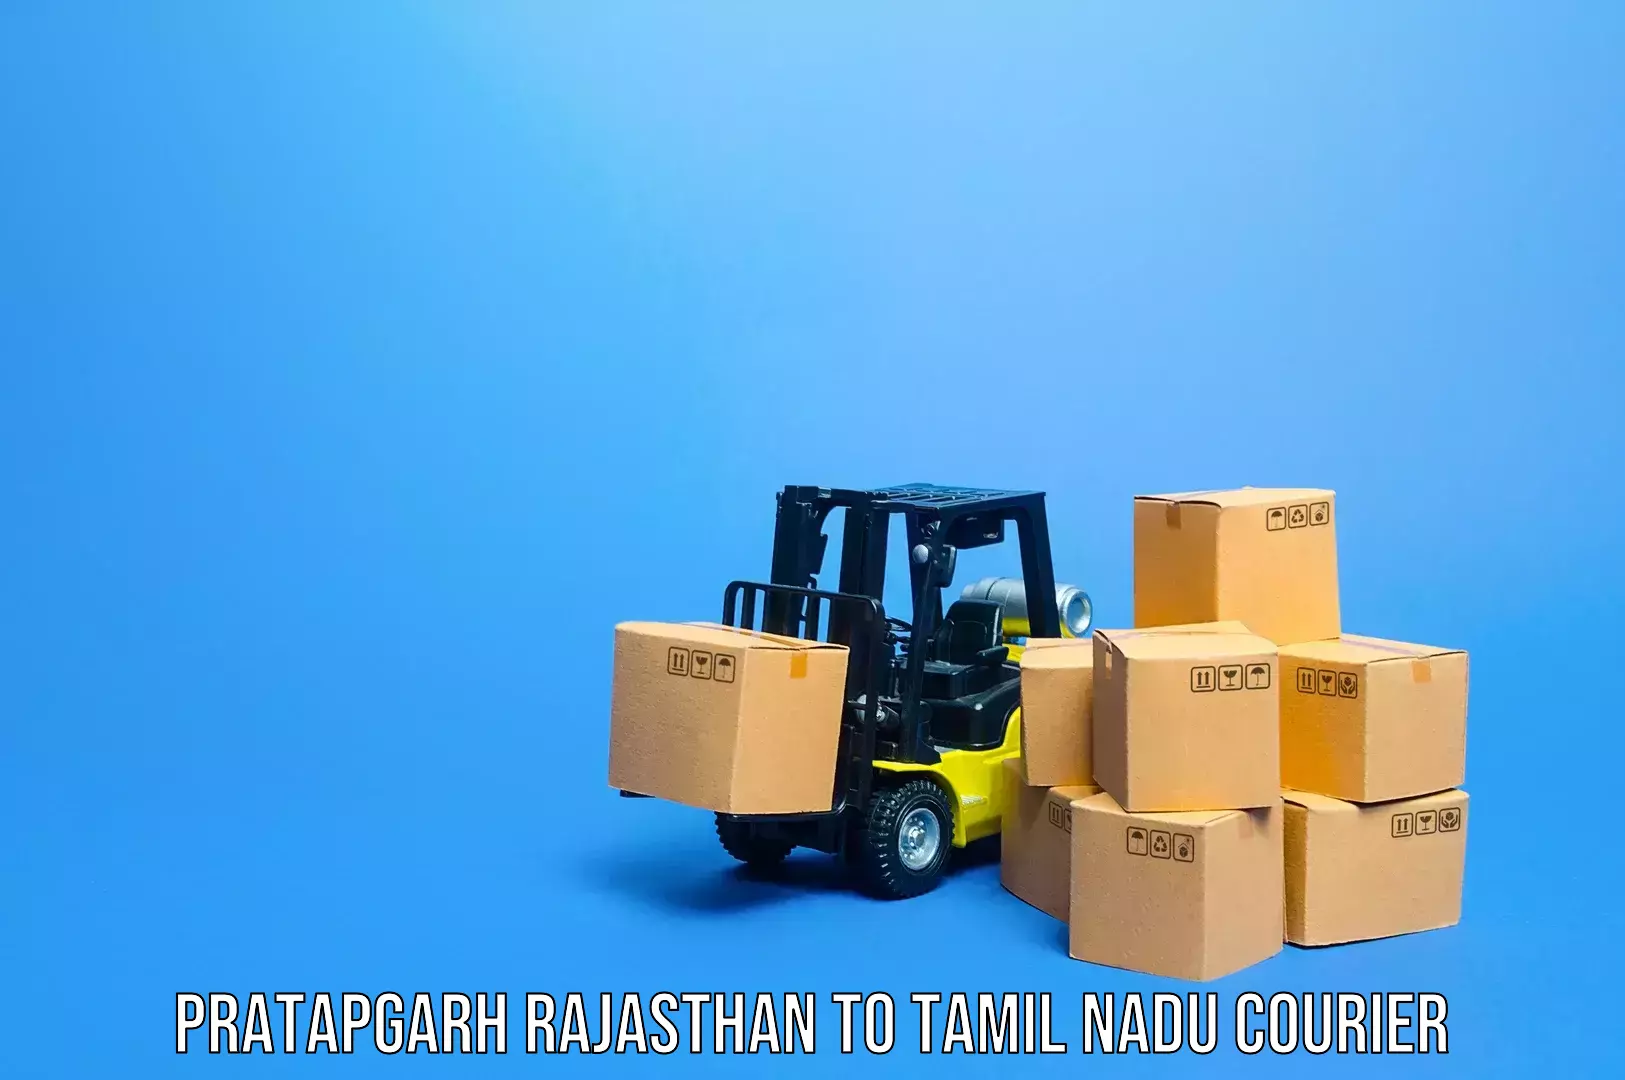 Baggage delivery estimate Pratapgarh Rajasthan to Tamil Nadu